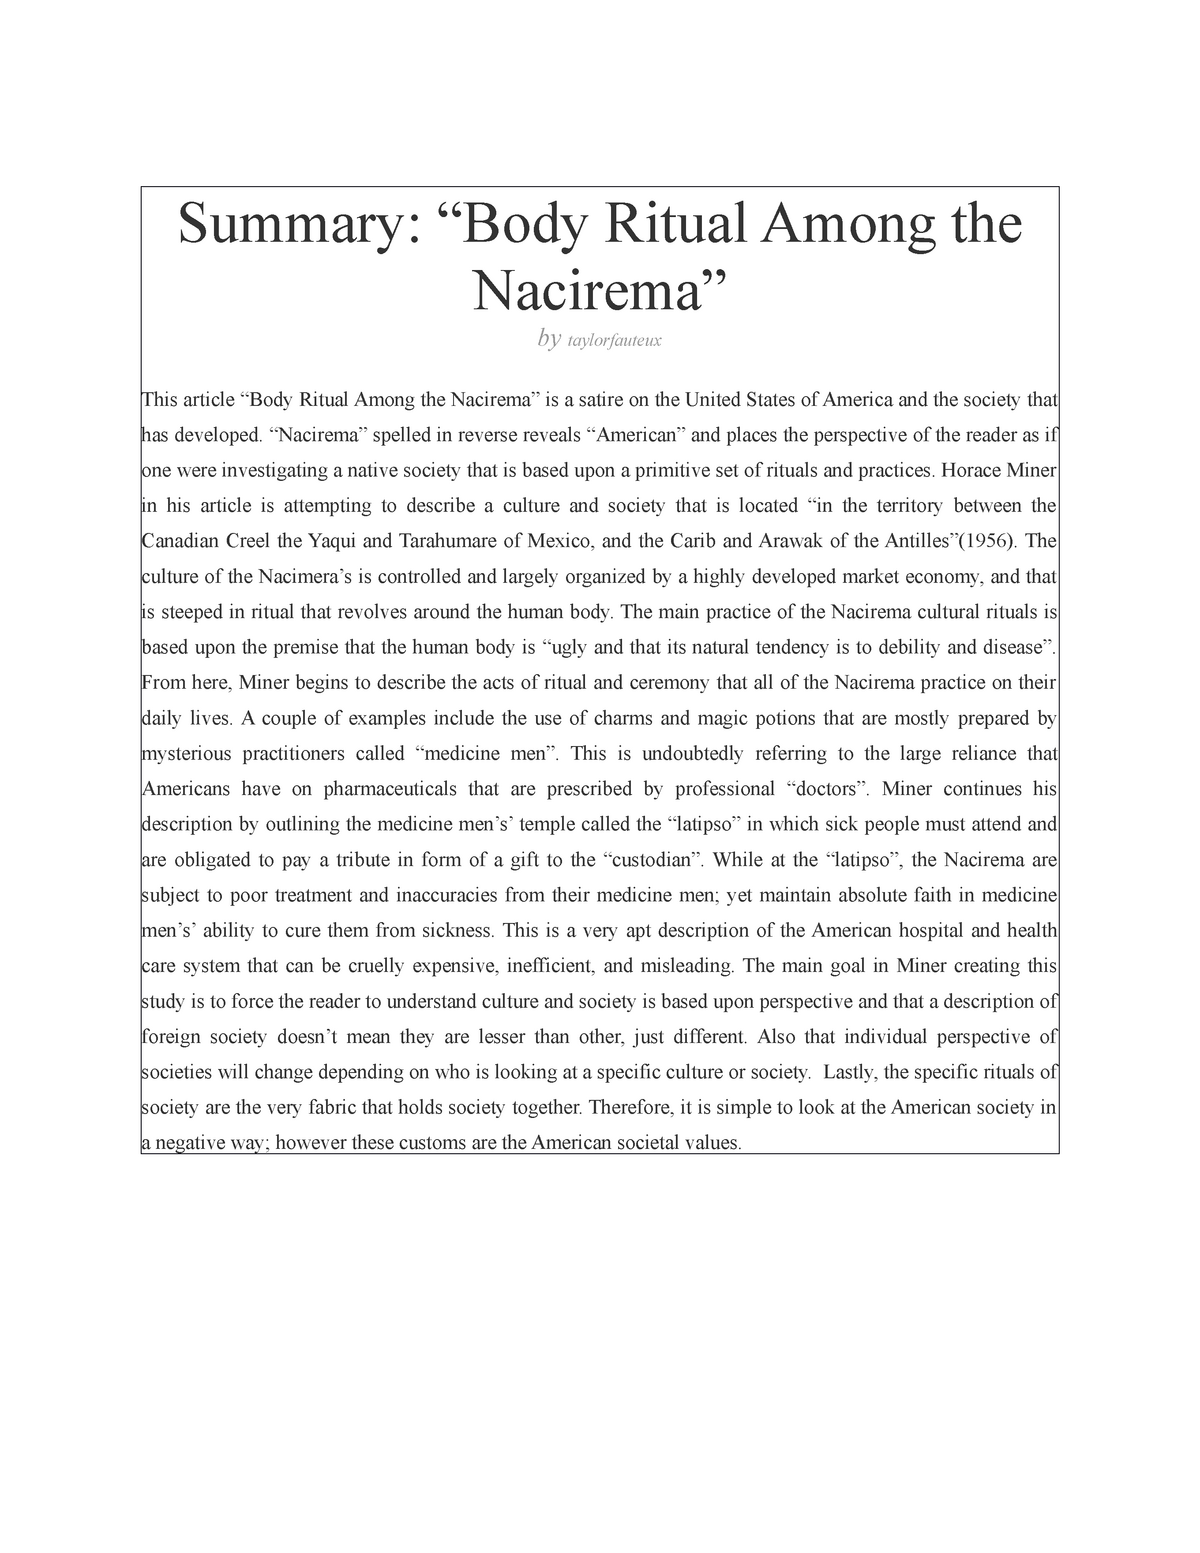 body ritual among the nacirema essay